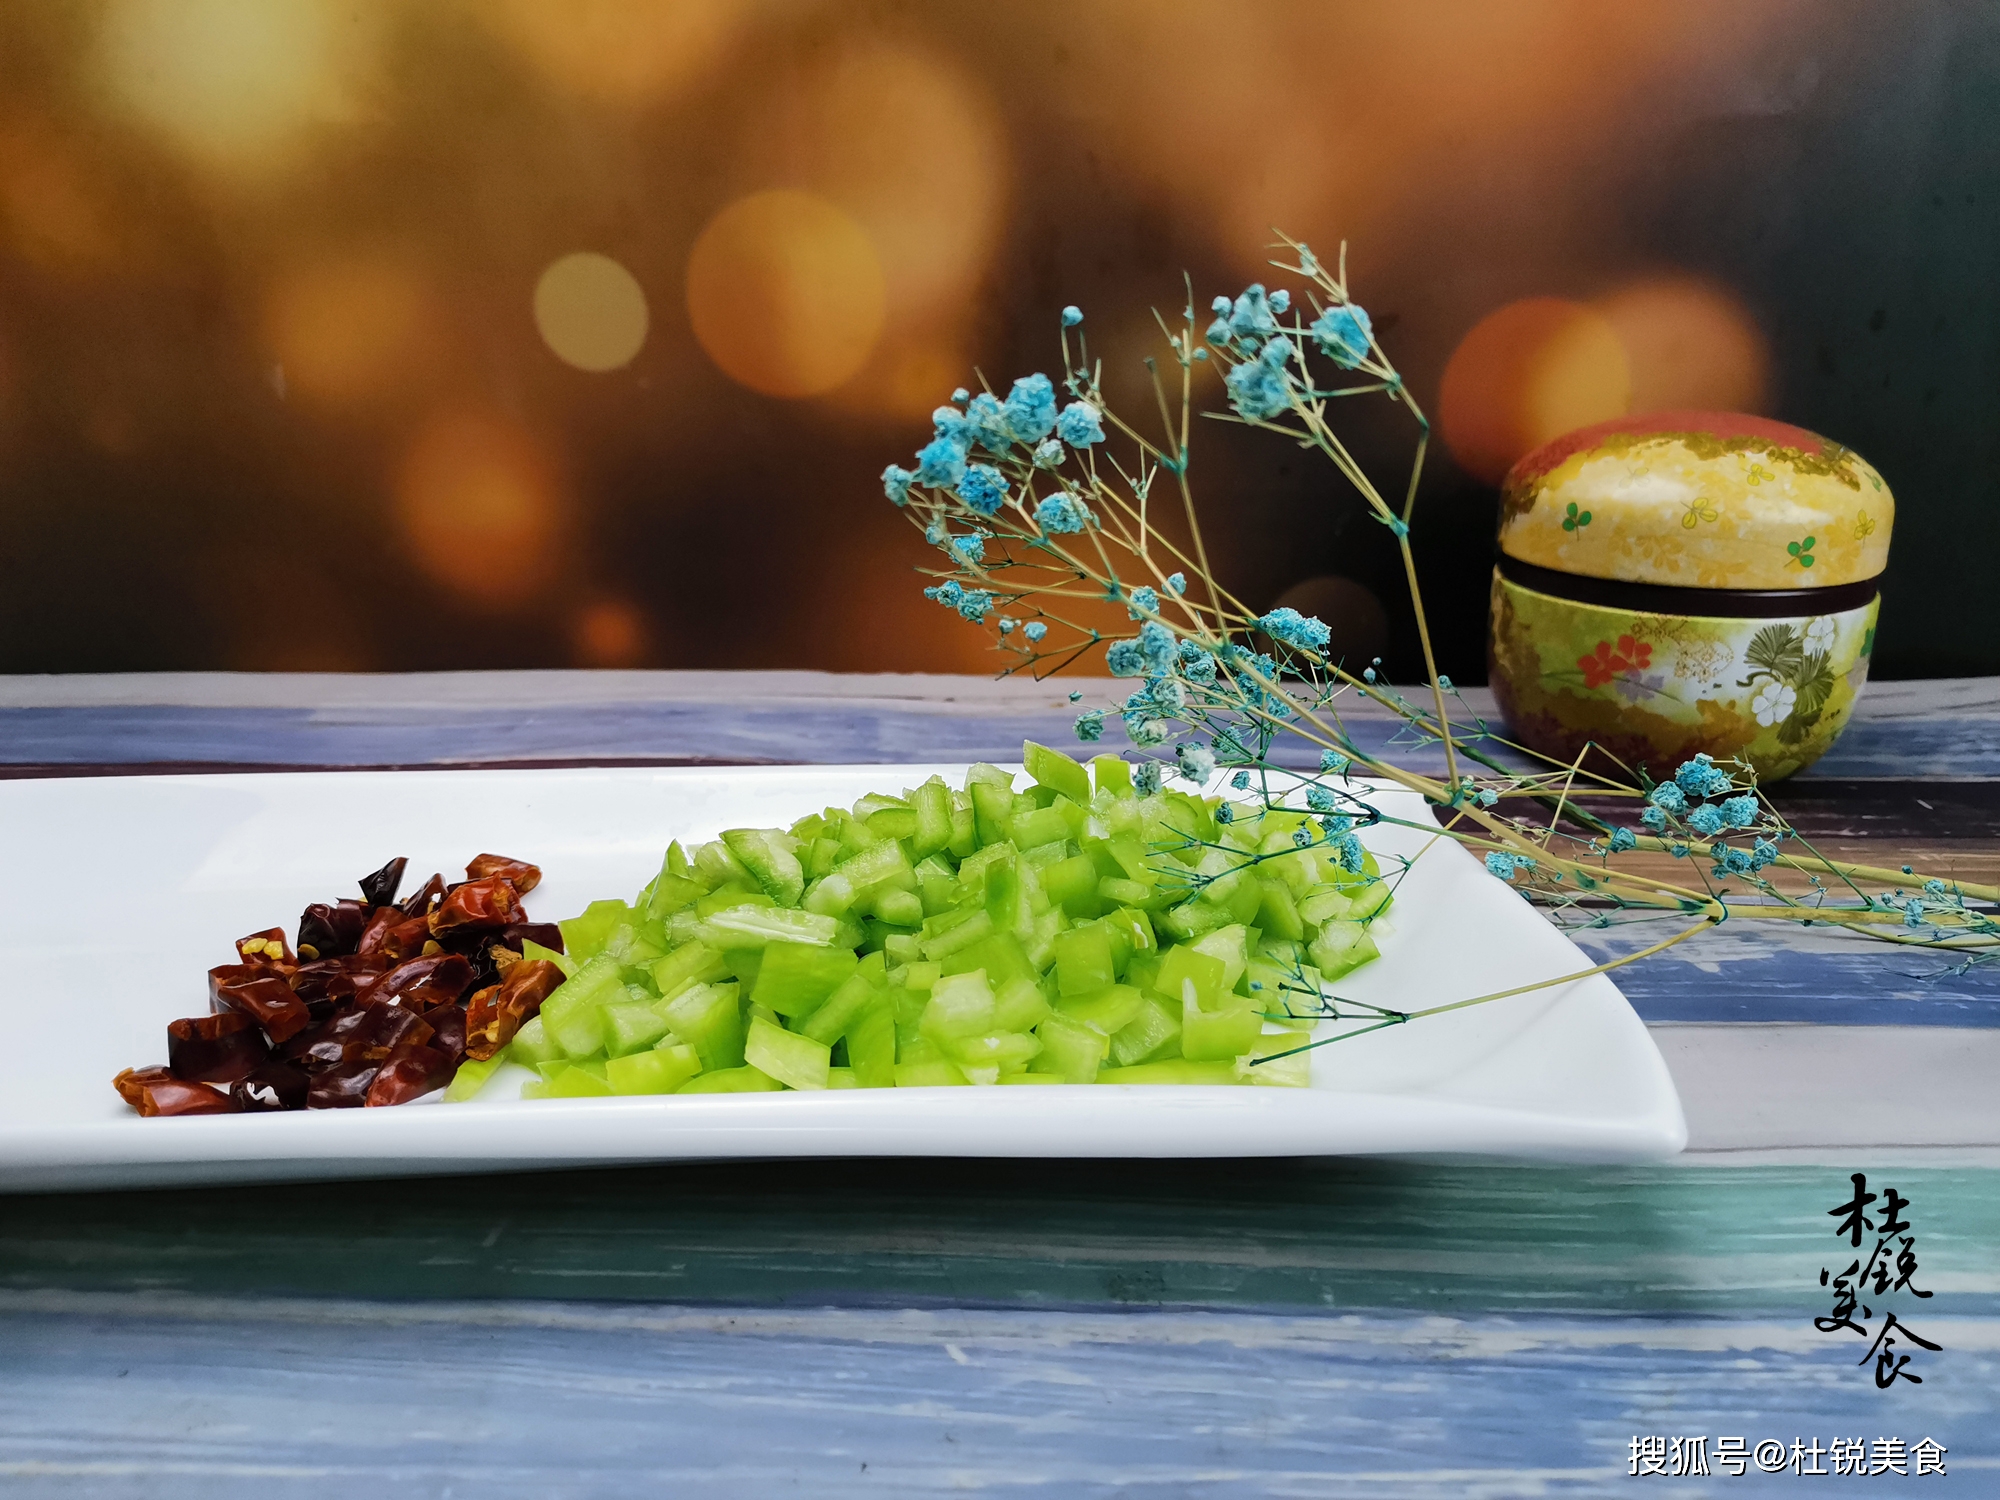 虾酱的吃法，无棣渤海湾虾酱的吃法，传统虾酱的吃法